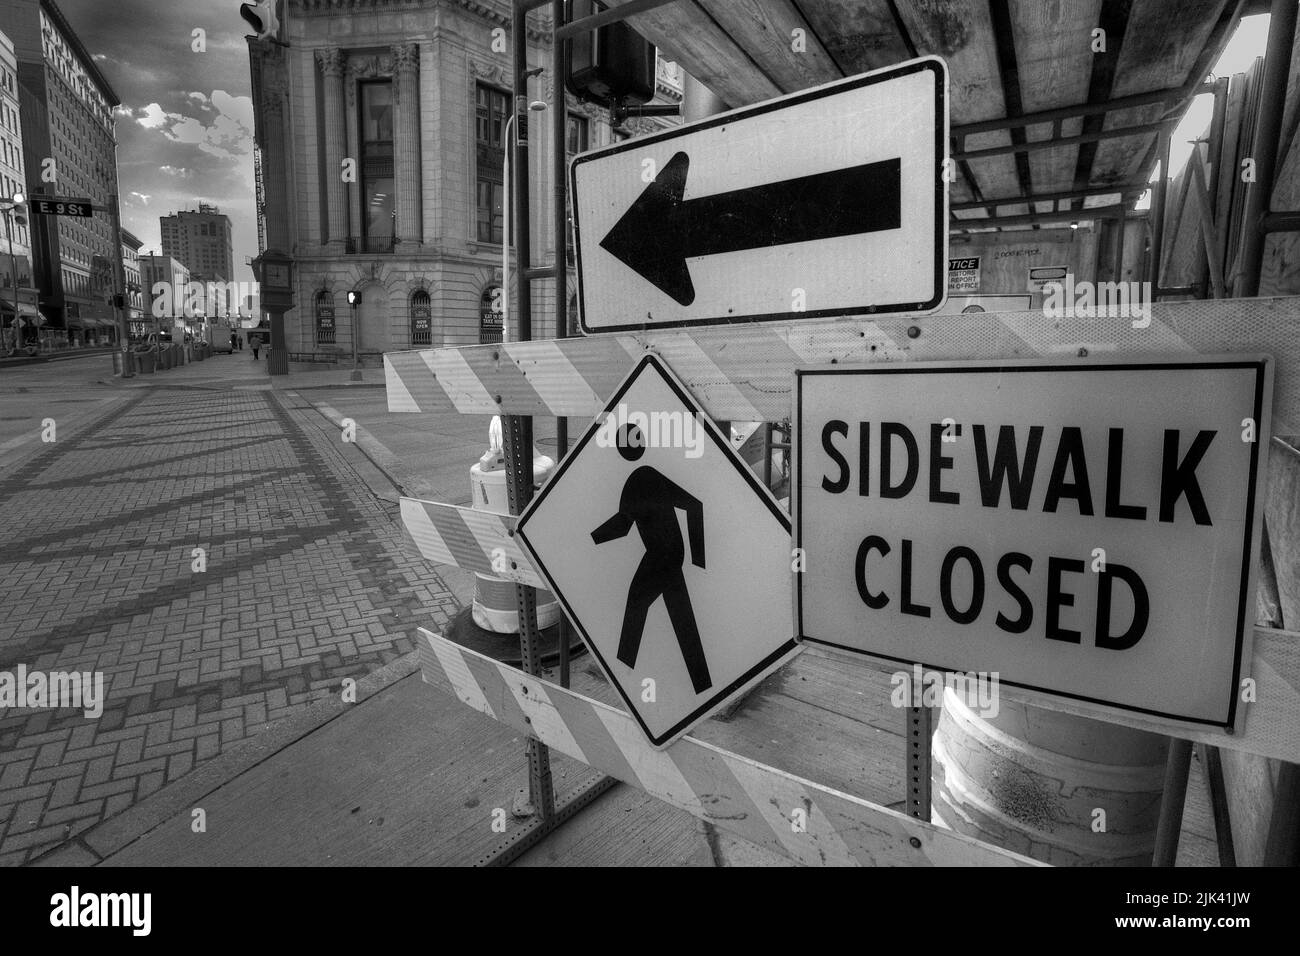 Image de ville en noir et blanc des panneaux indiquant que le trottoir est fermé et un autre itinéraire Banque D'Images